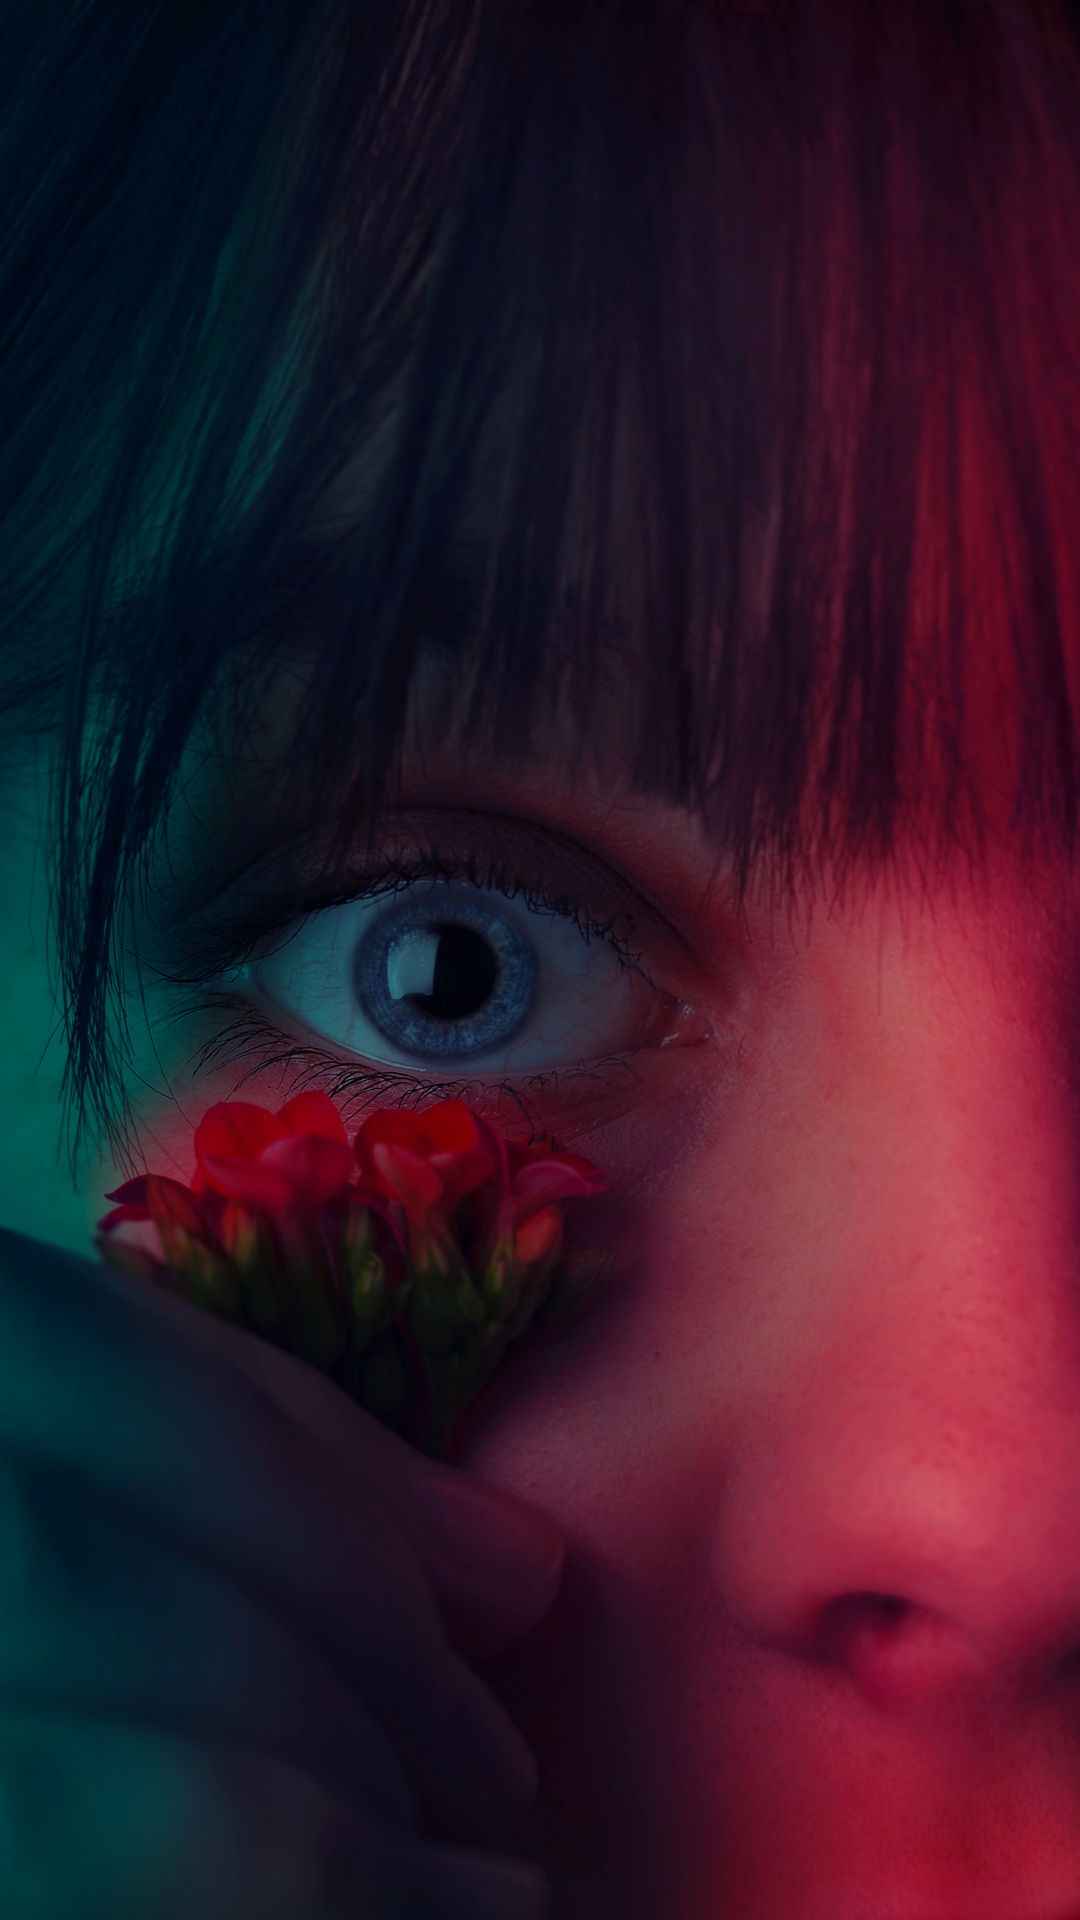 Mädchen Mit Roter Blume im Gesicht. Wallpaper in 1080x1920 Resolution